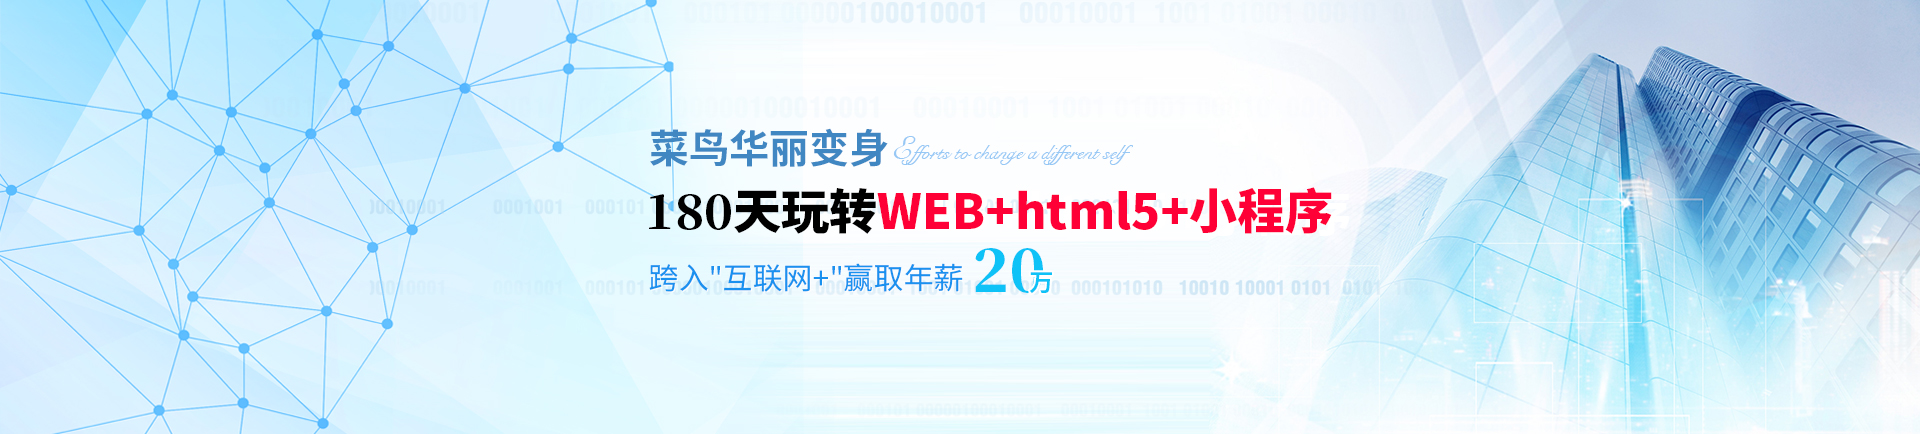 180天玩转WEB+html5+小程序 跨入互联网+赢取高薪-zhejiang